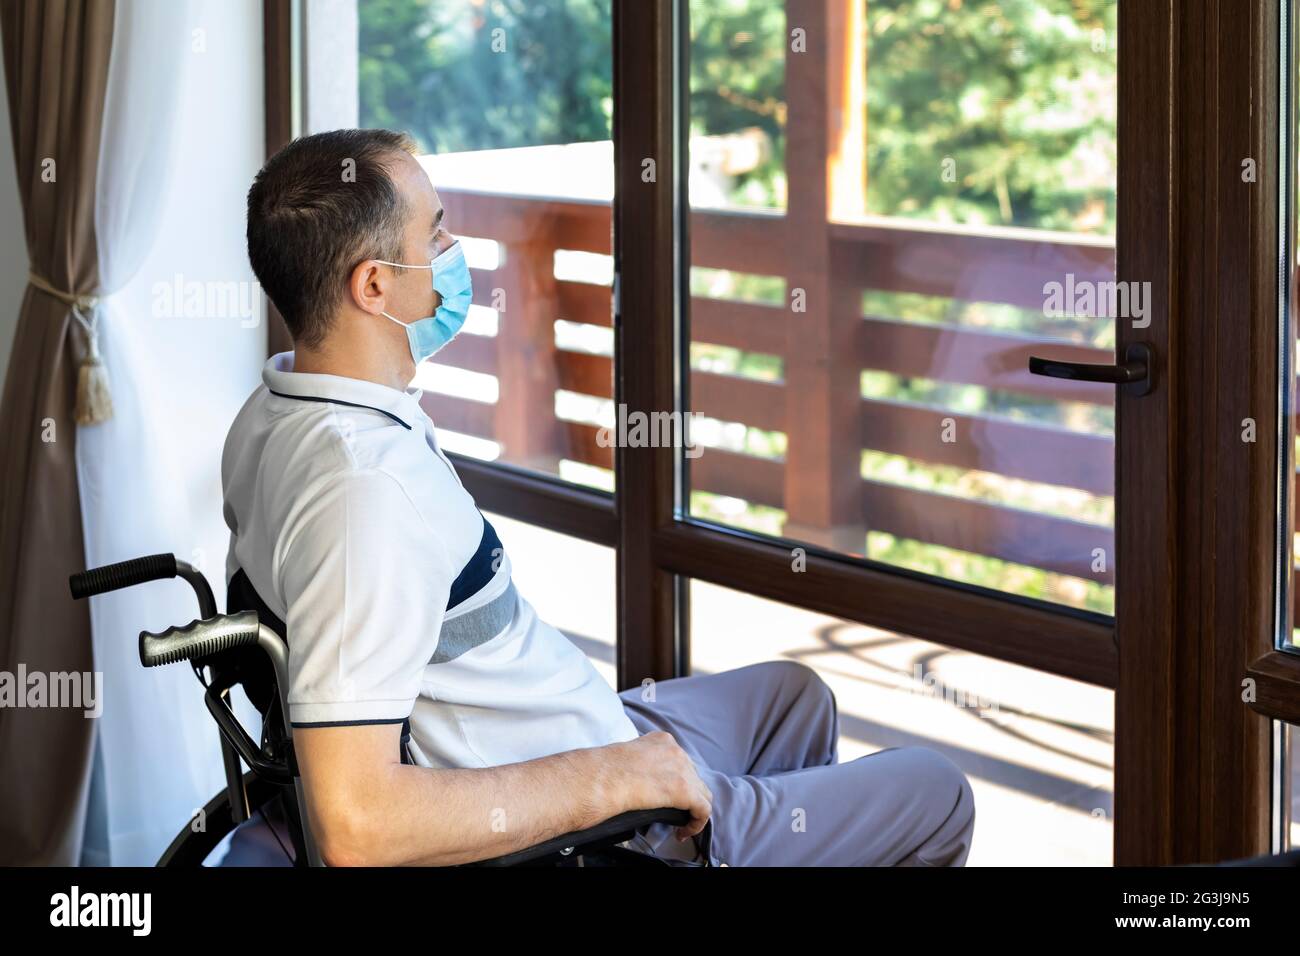 Einsamer junger Mann mit Gesichtsmaske sitzt allein in einem Rollstuhl und schaut aus dem Fenster. Konzentrieren Sie sich auf sein Gesicht. Stockfoto